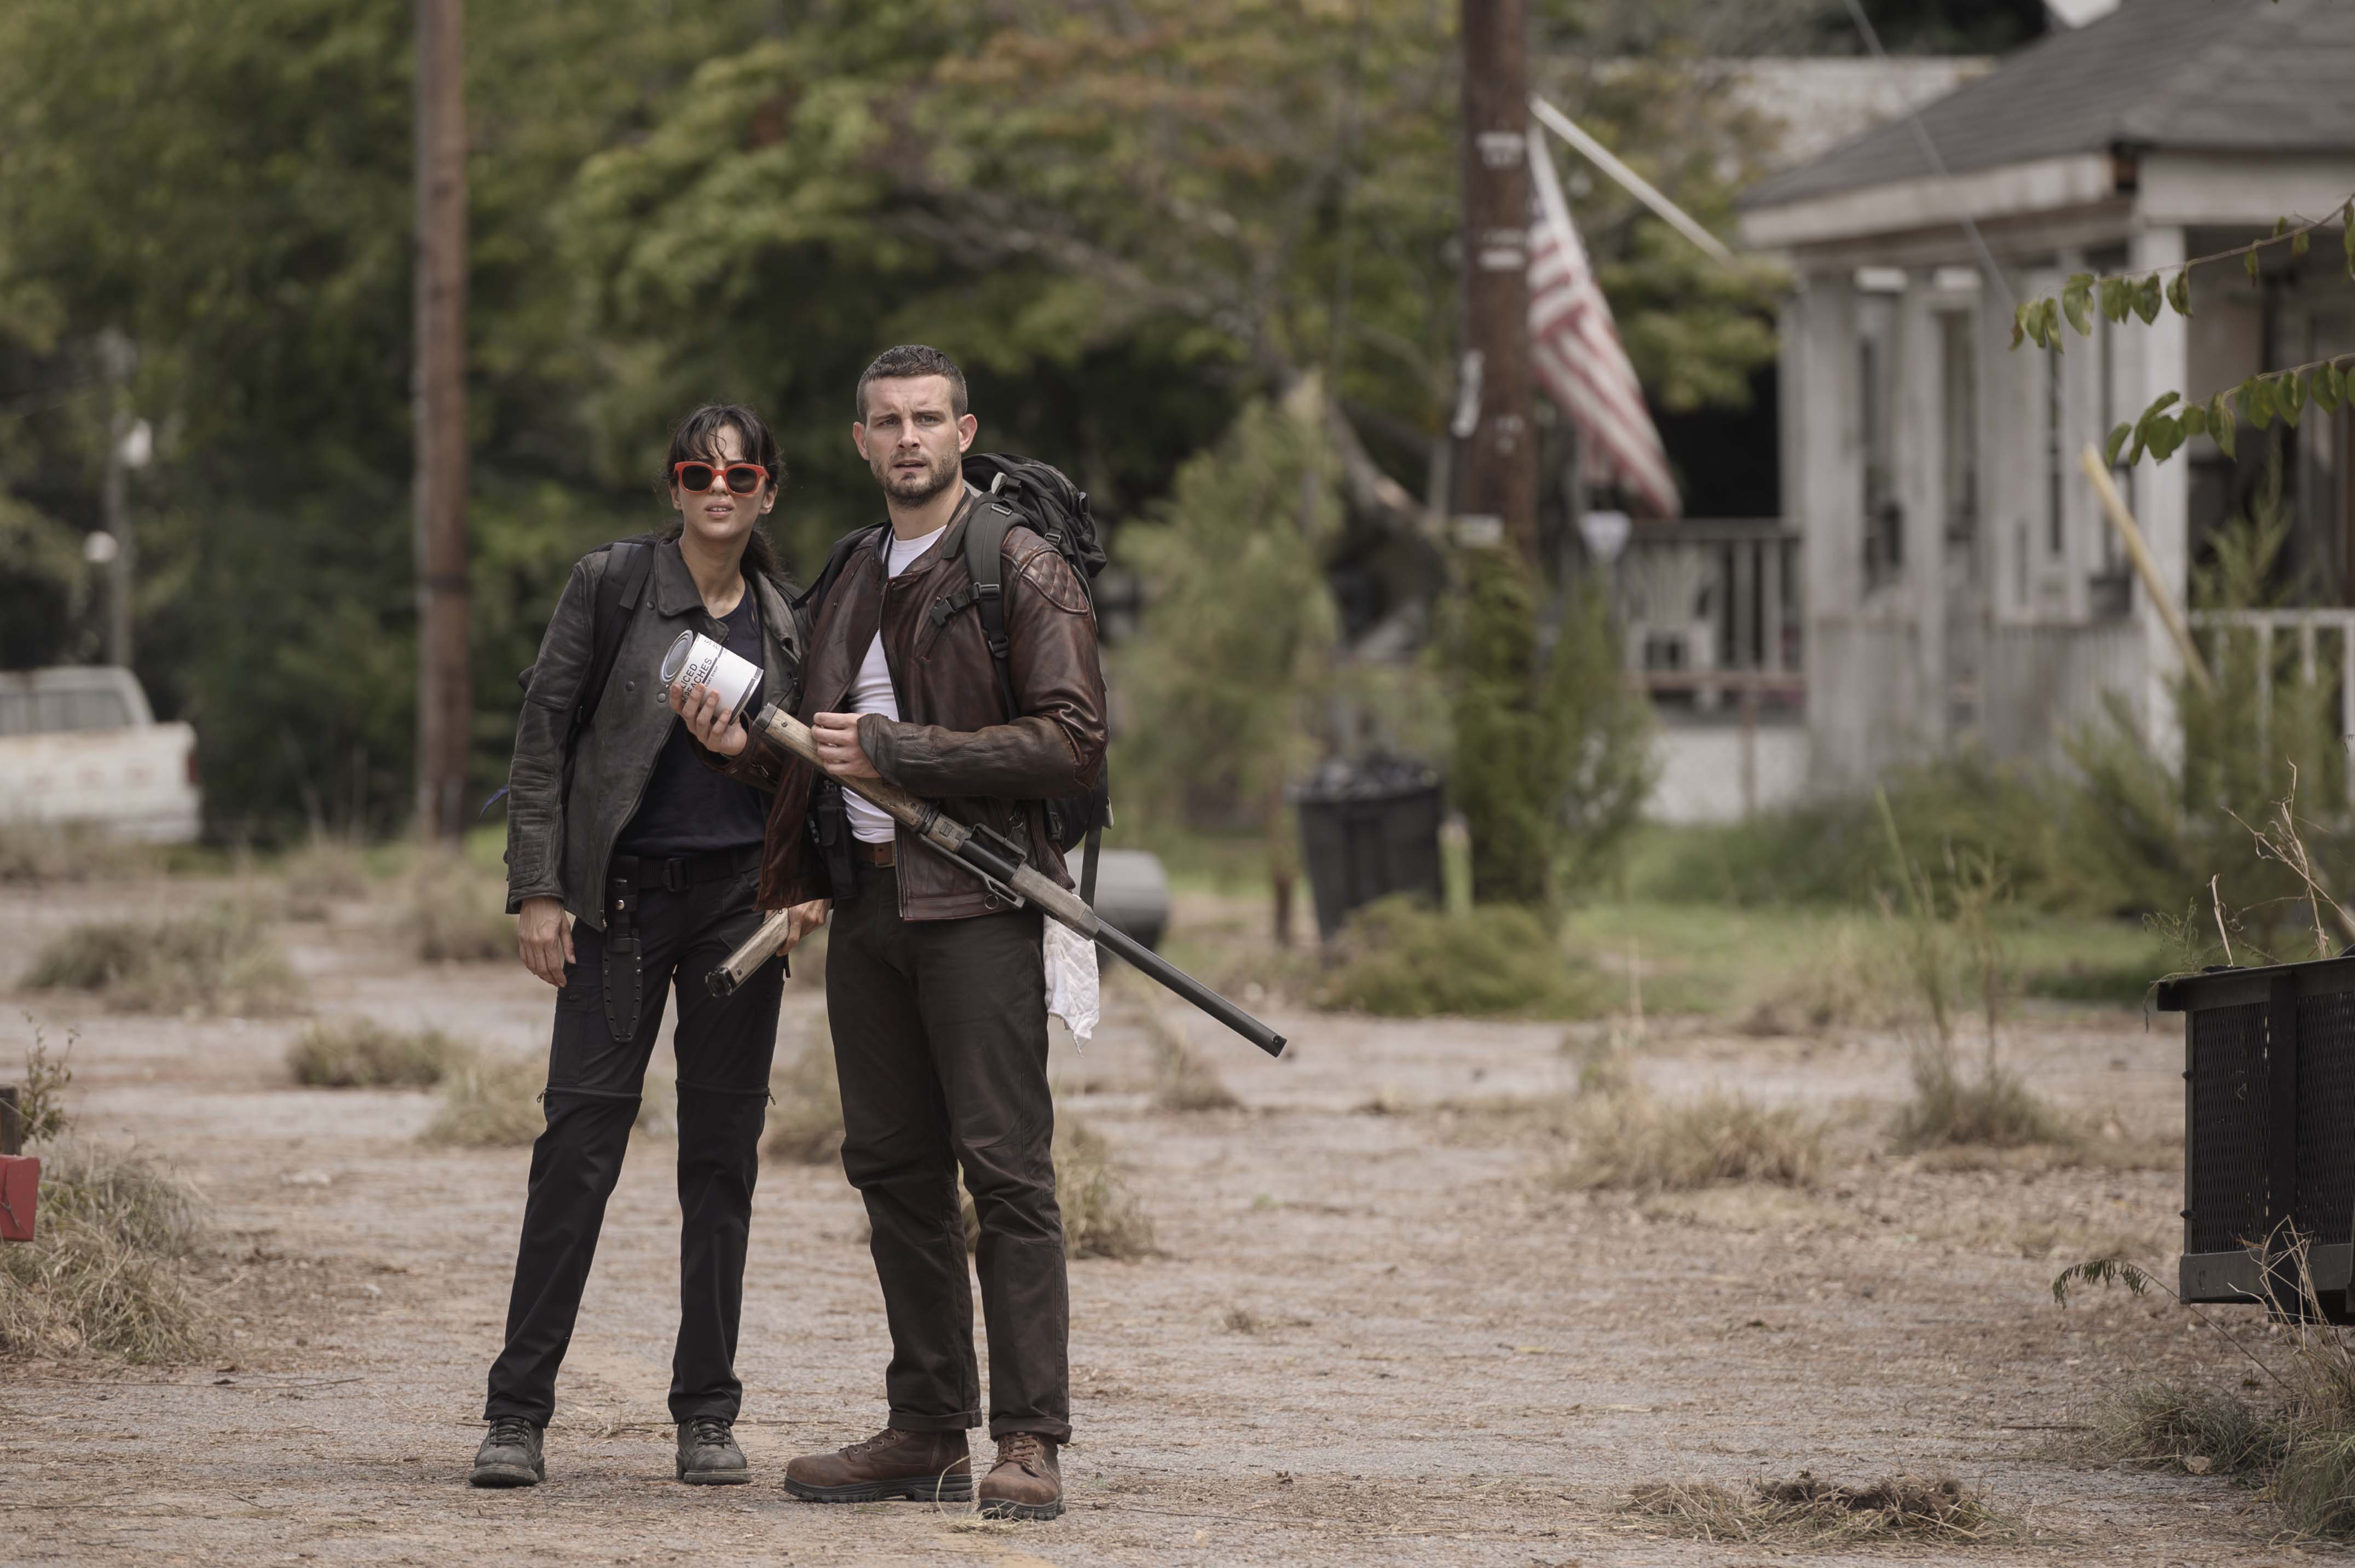 Criador de The Walking Dead vai produzir nova série baseada na saga As  Crônicas de Amber - Notícias de séries - AdoroCinema